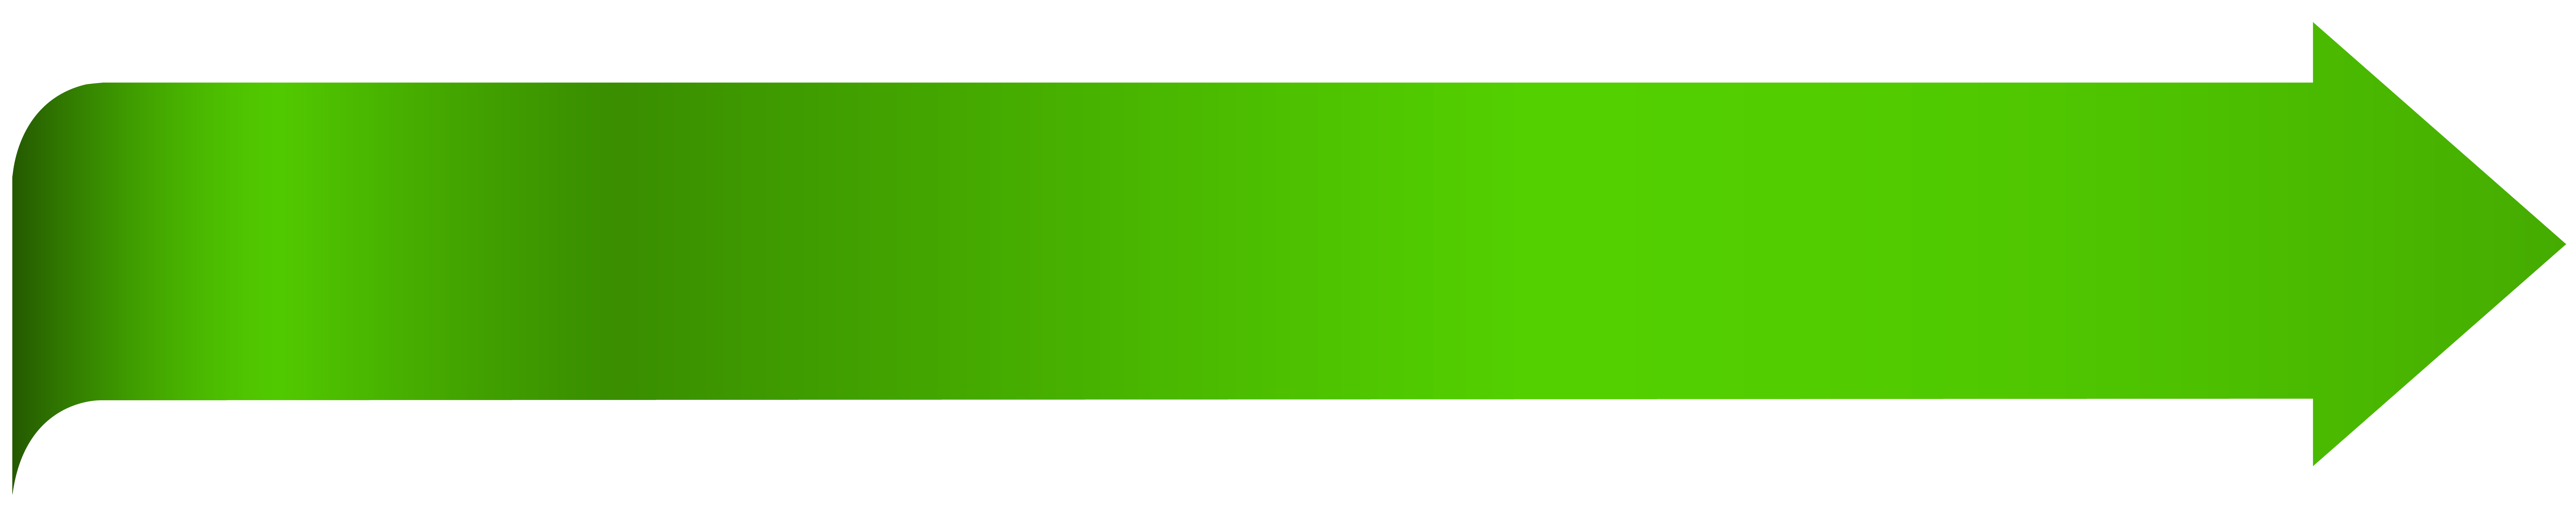 green rectangle clip art - photo #37